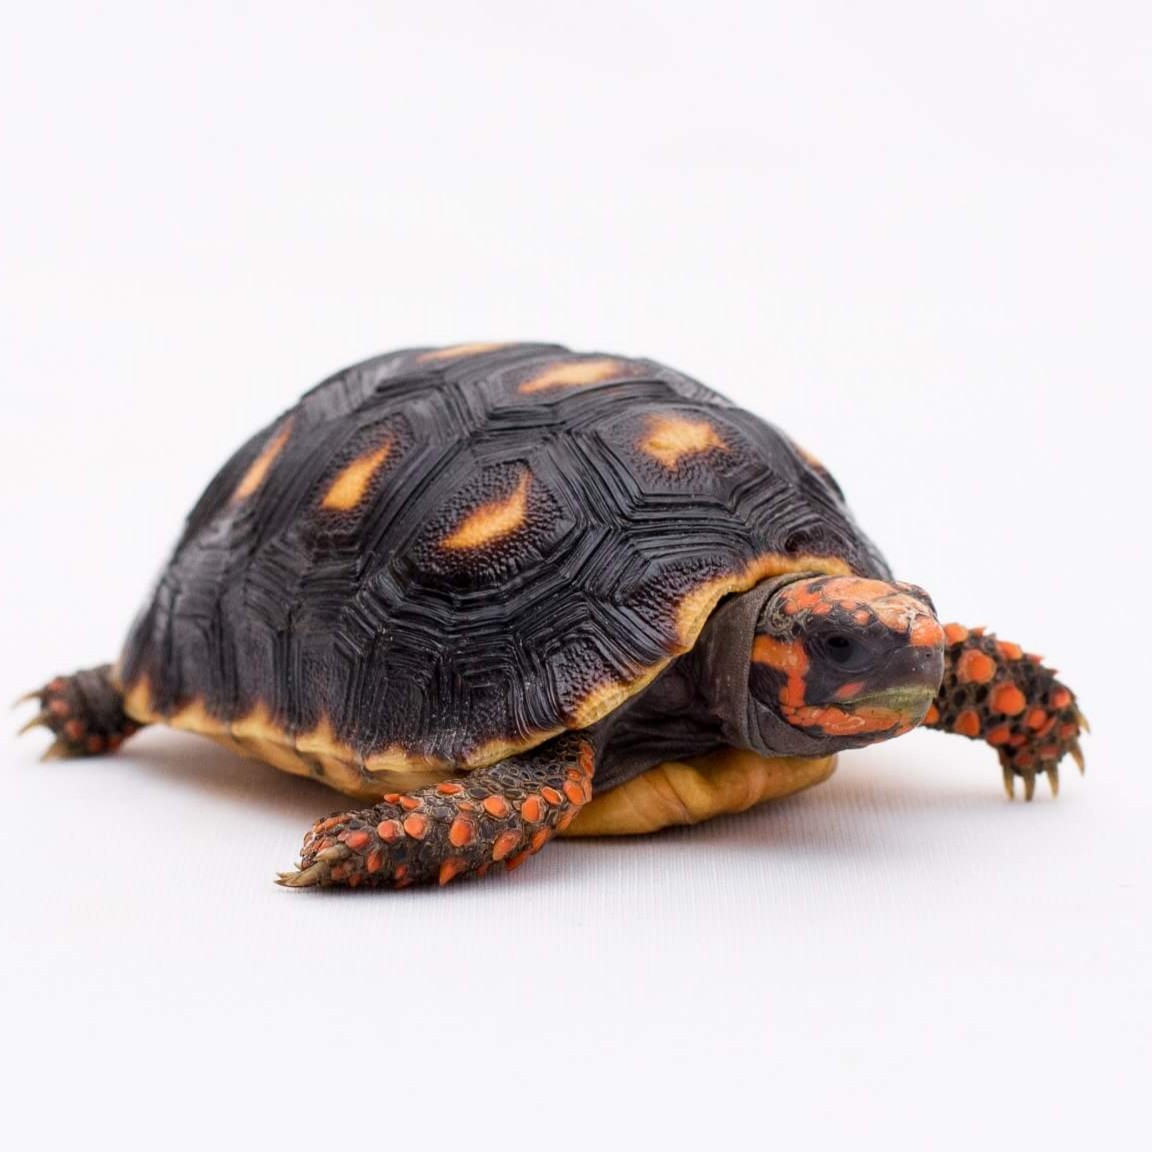 Rùa Chân Đỏ là dòng rùa cạn đến từ miền bắc Nam Mỹ